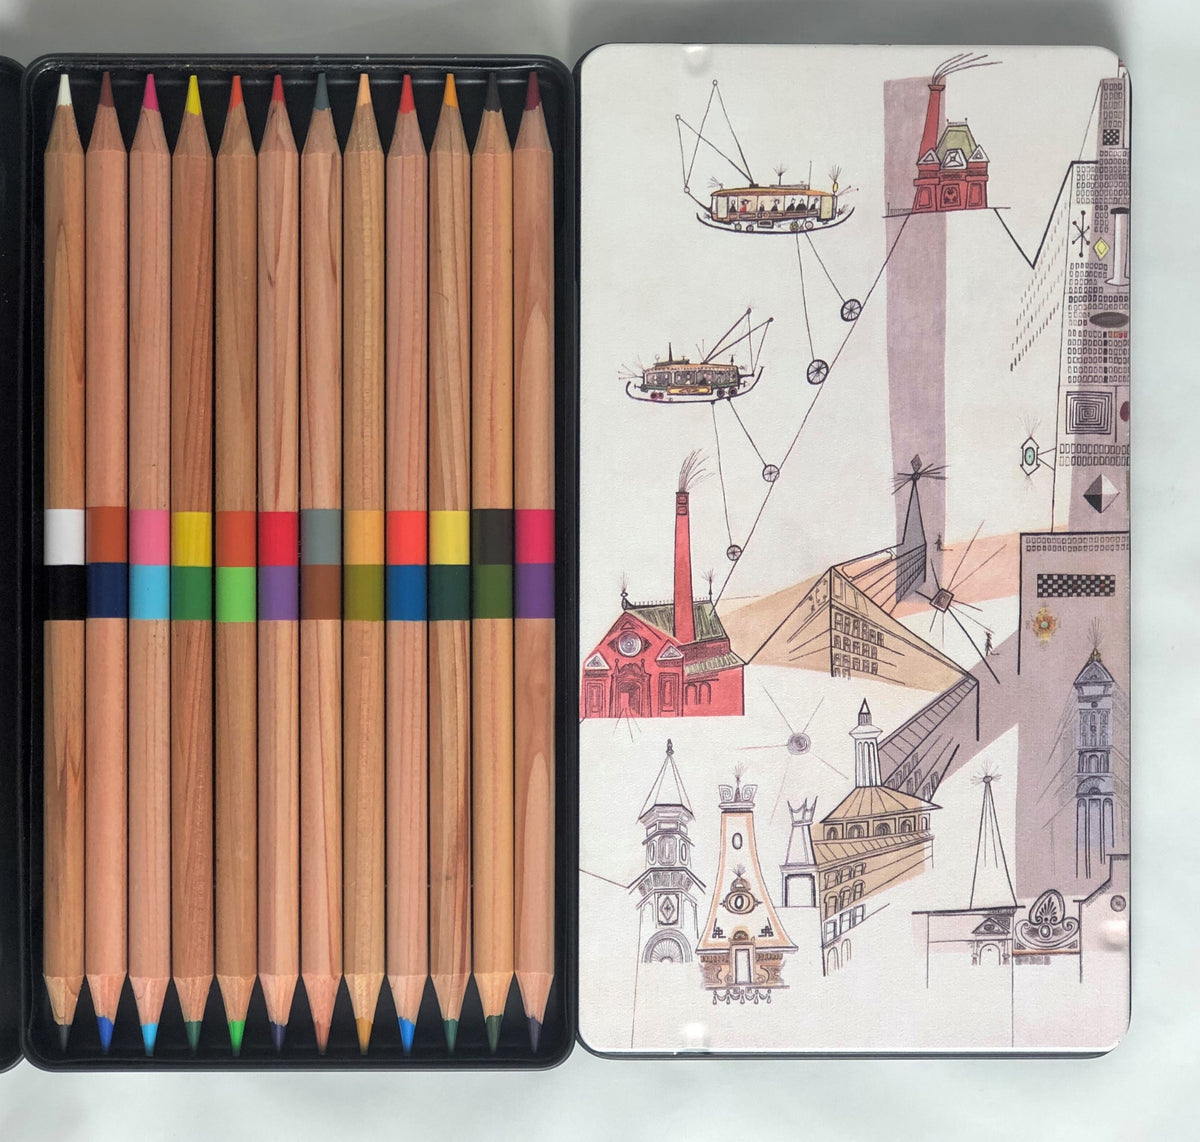 Magic Pencils – Montague Workshop